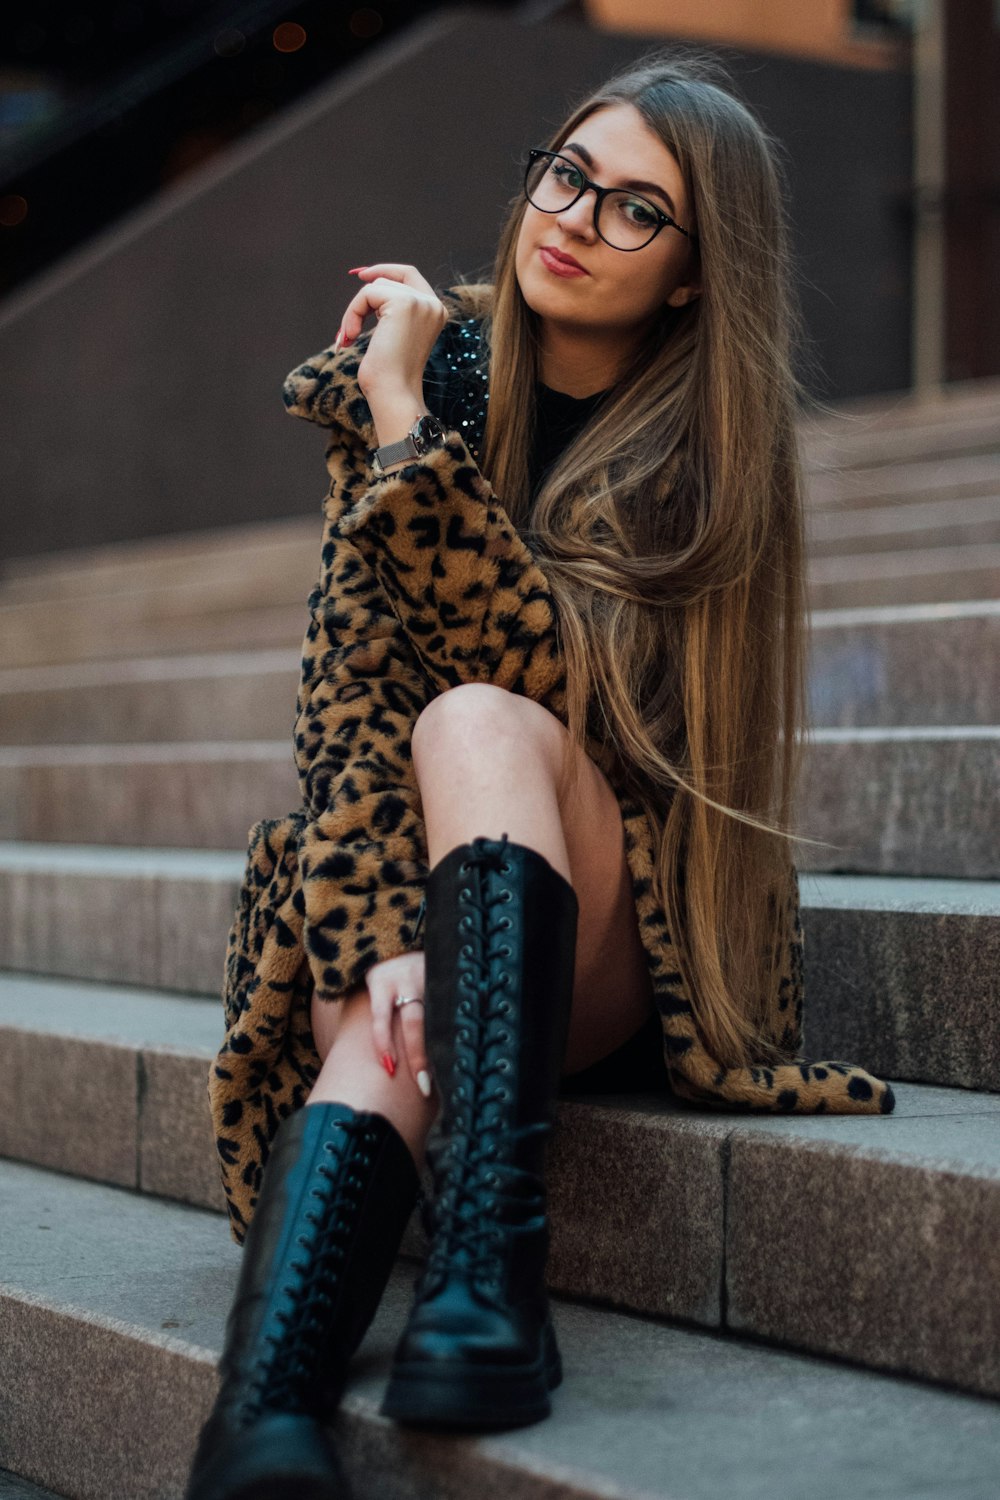 Frau in Mantel mit Leopardenprint und schwarzen Stiefeln sitzt auf Betontreppen